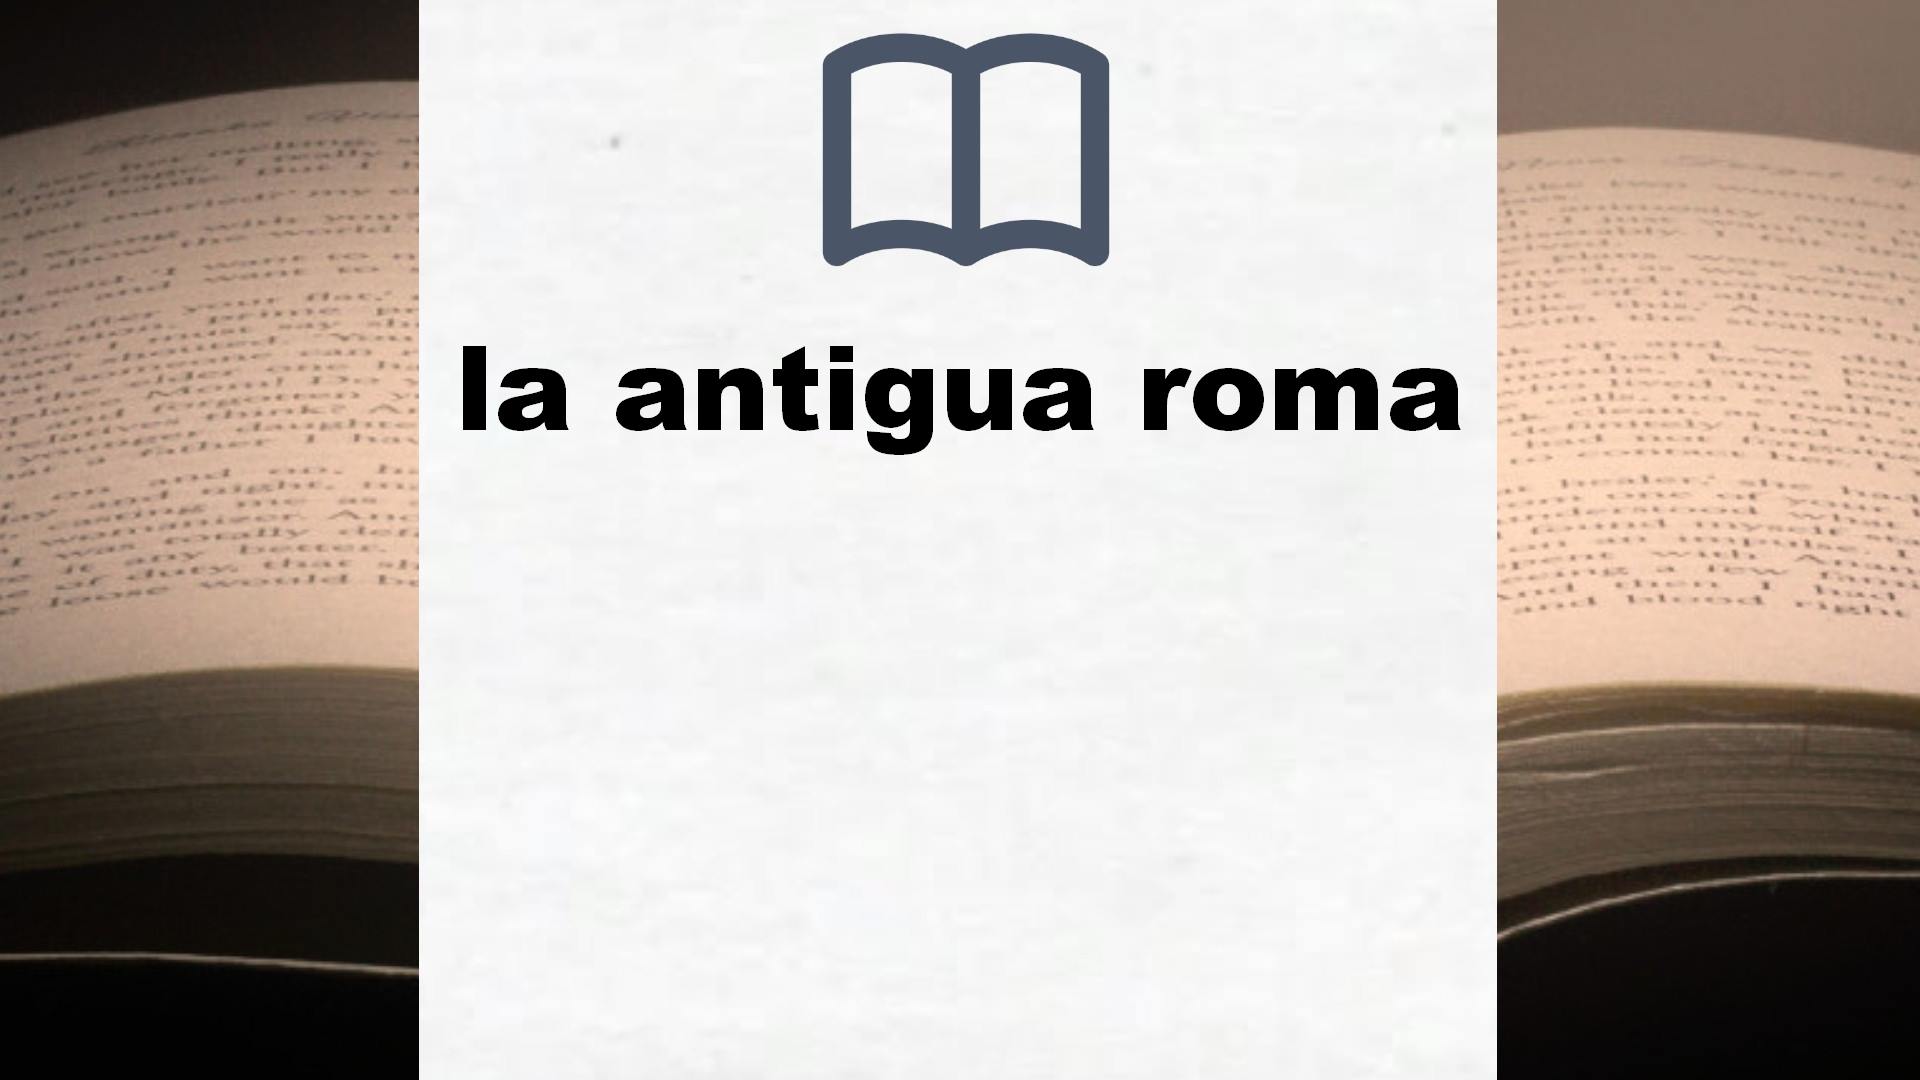 Libros sobre la antigua roma